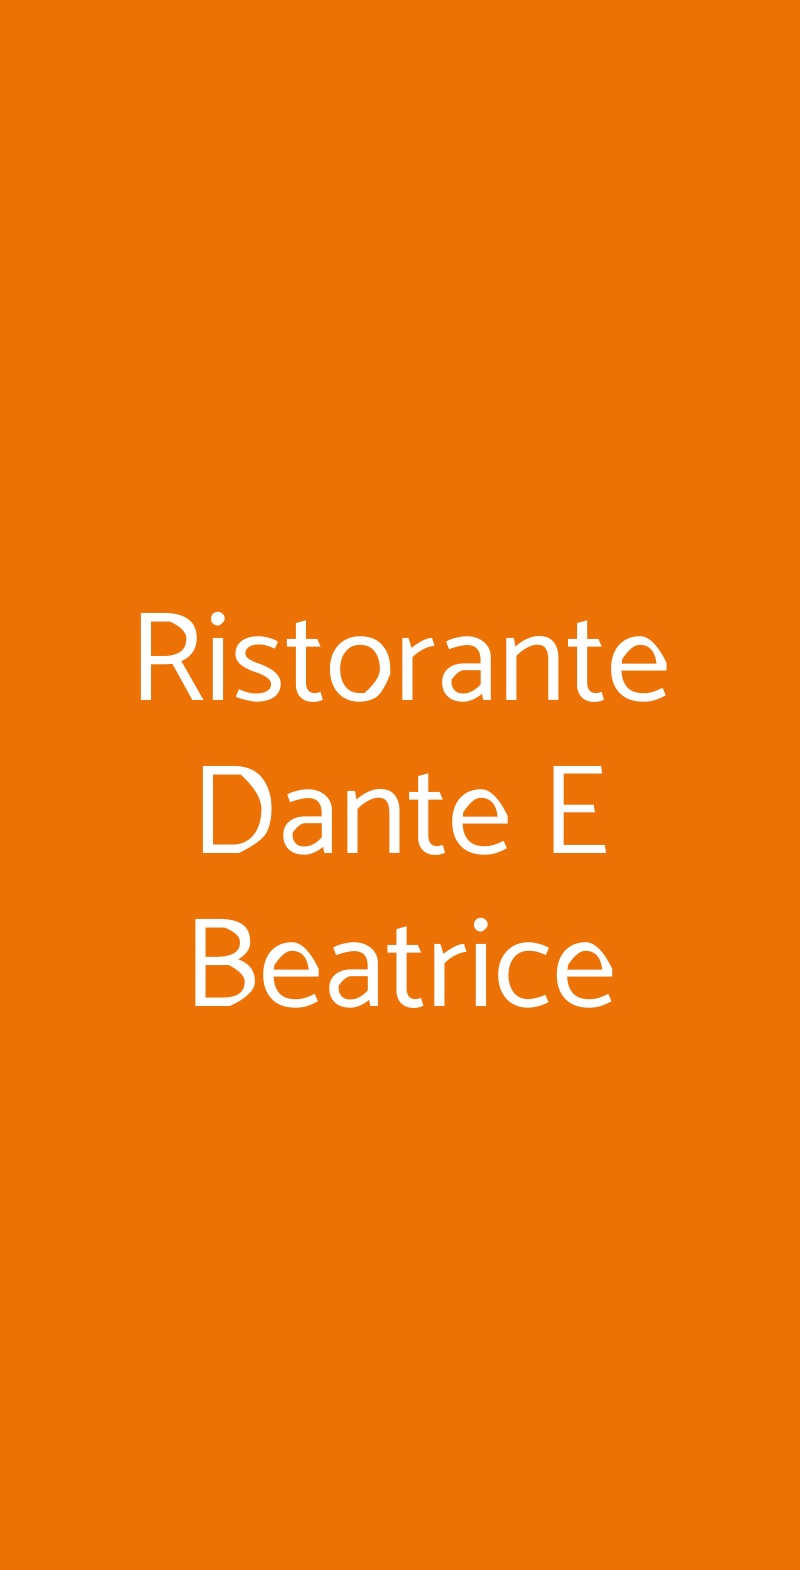 Ristorante Dante E Beatrice Firenze menù 1 pagina